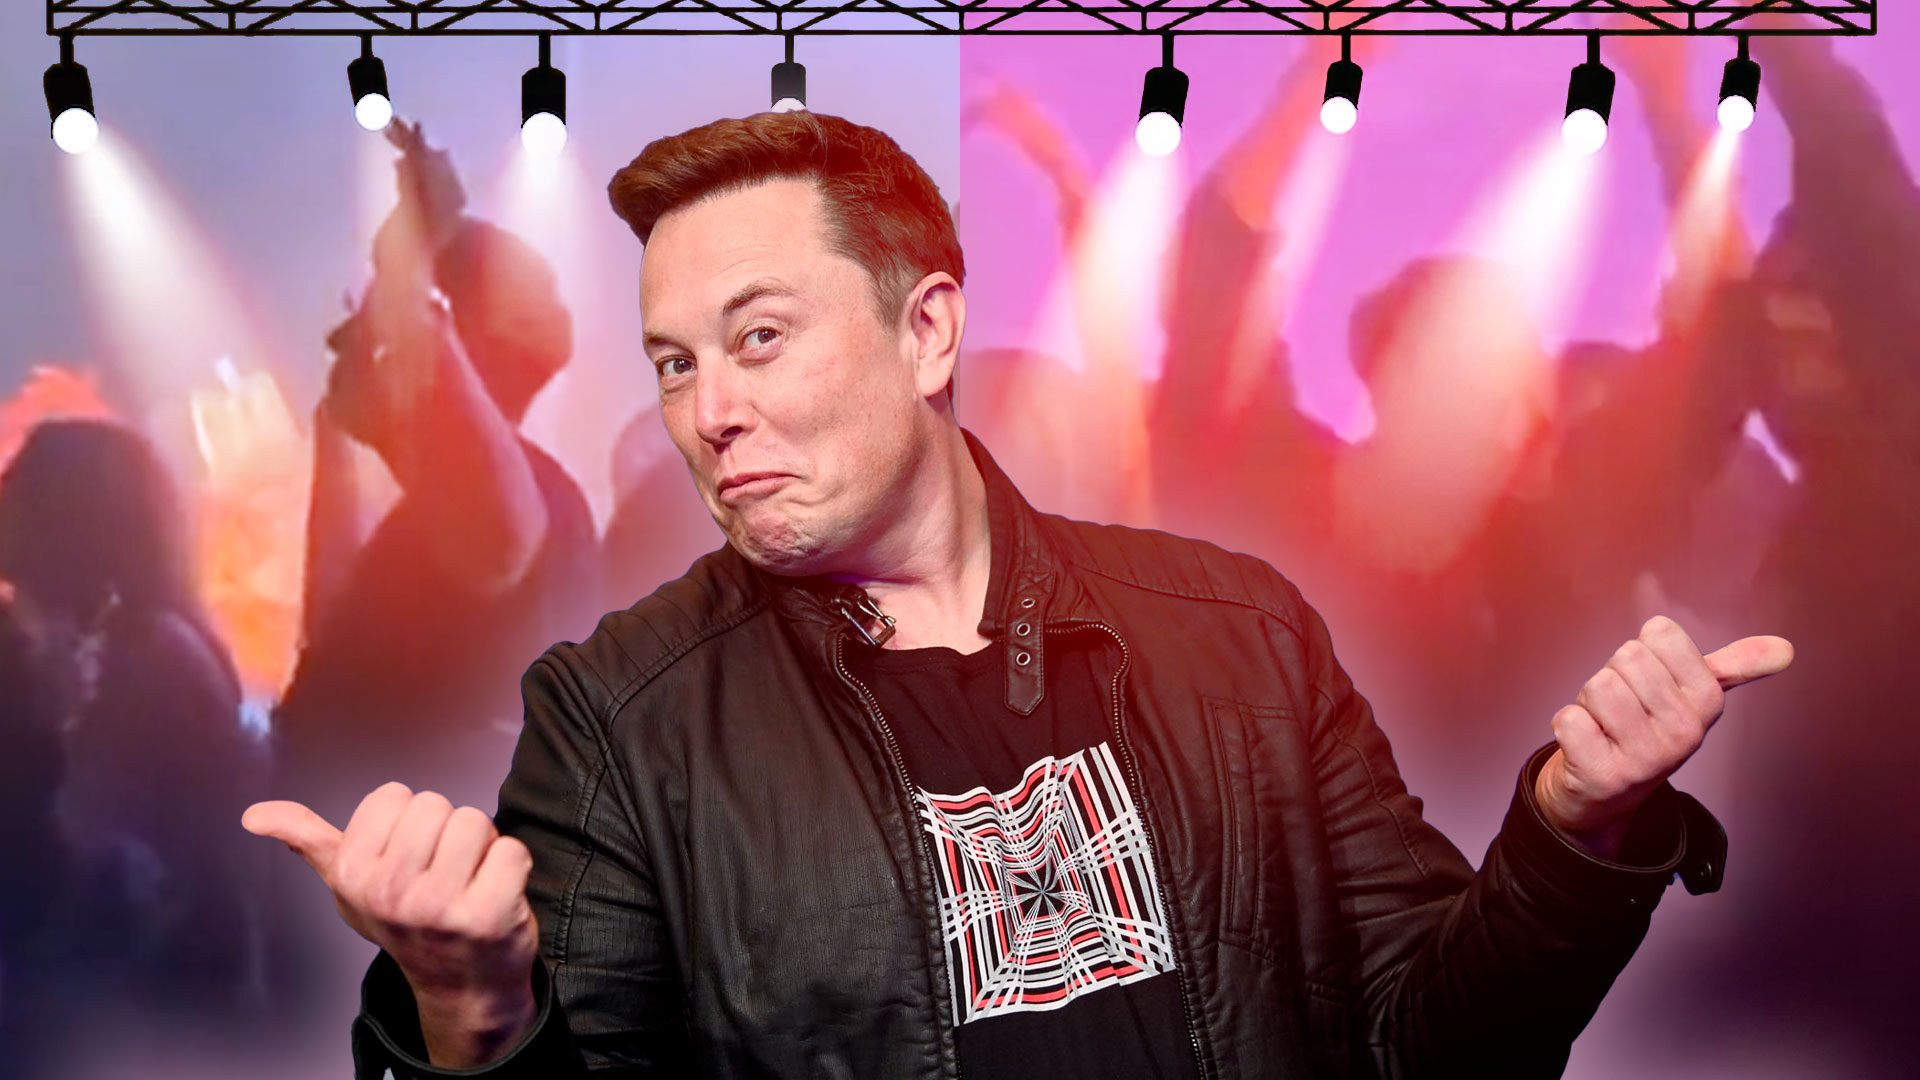 Así fue la noche loca de Elon Musk en concierto de música electrónica en Los Cabos 